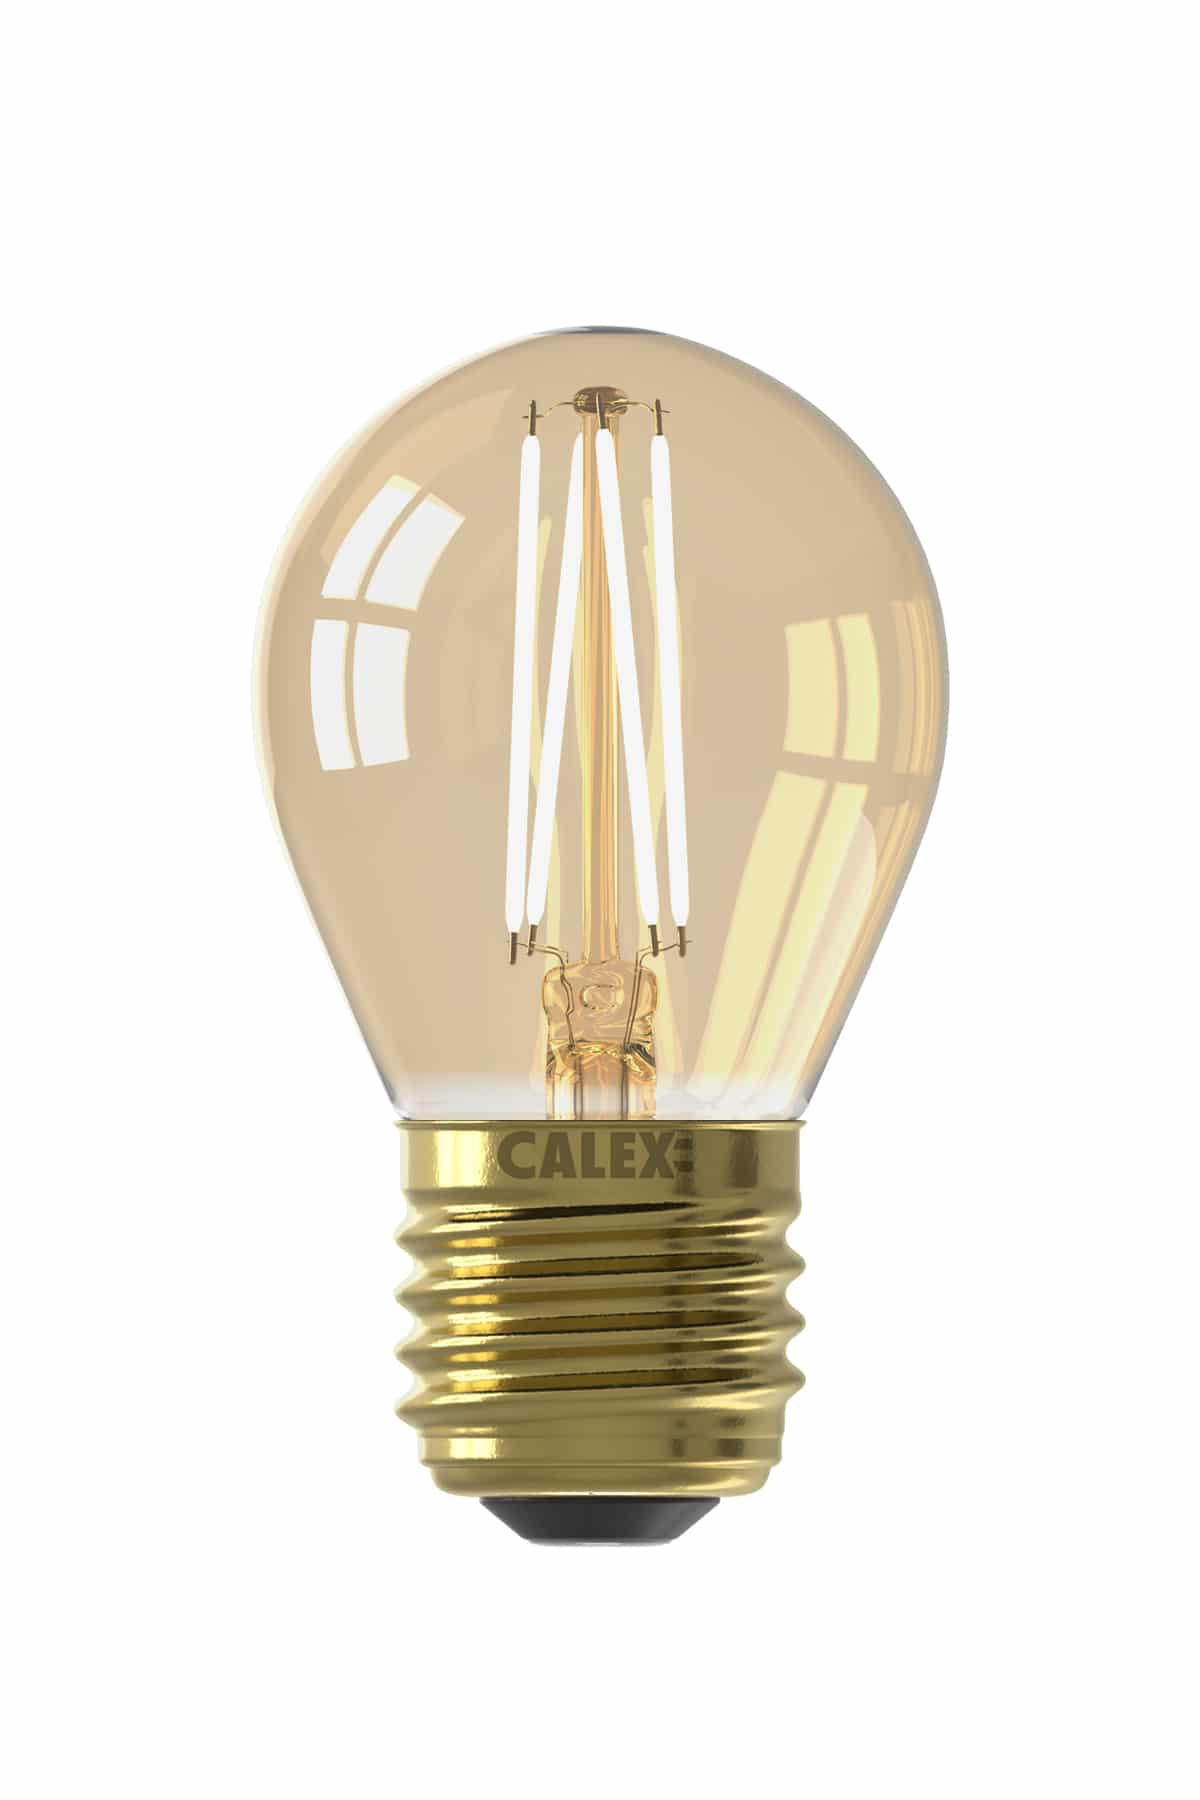 Calex Spherical Bulb Led Lamp E27 8211 200 Lumen